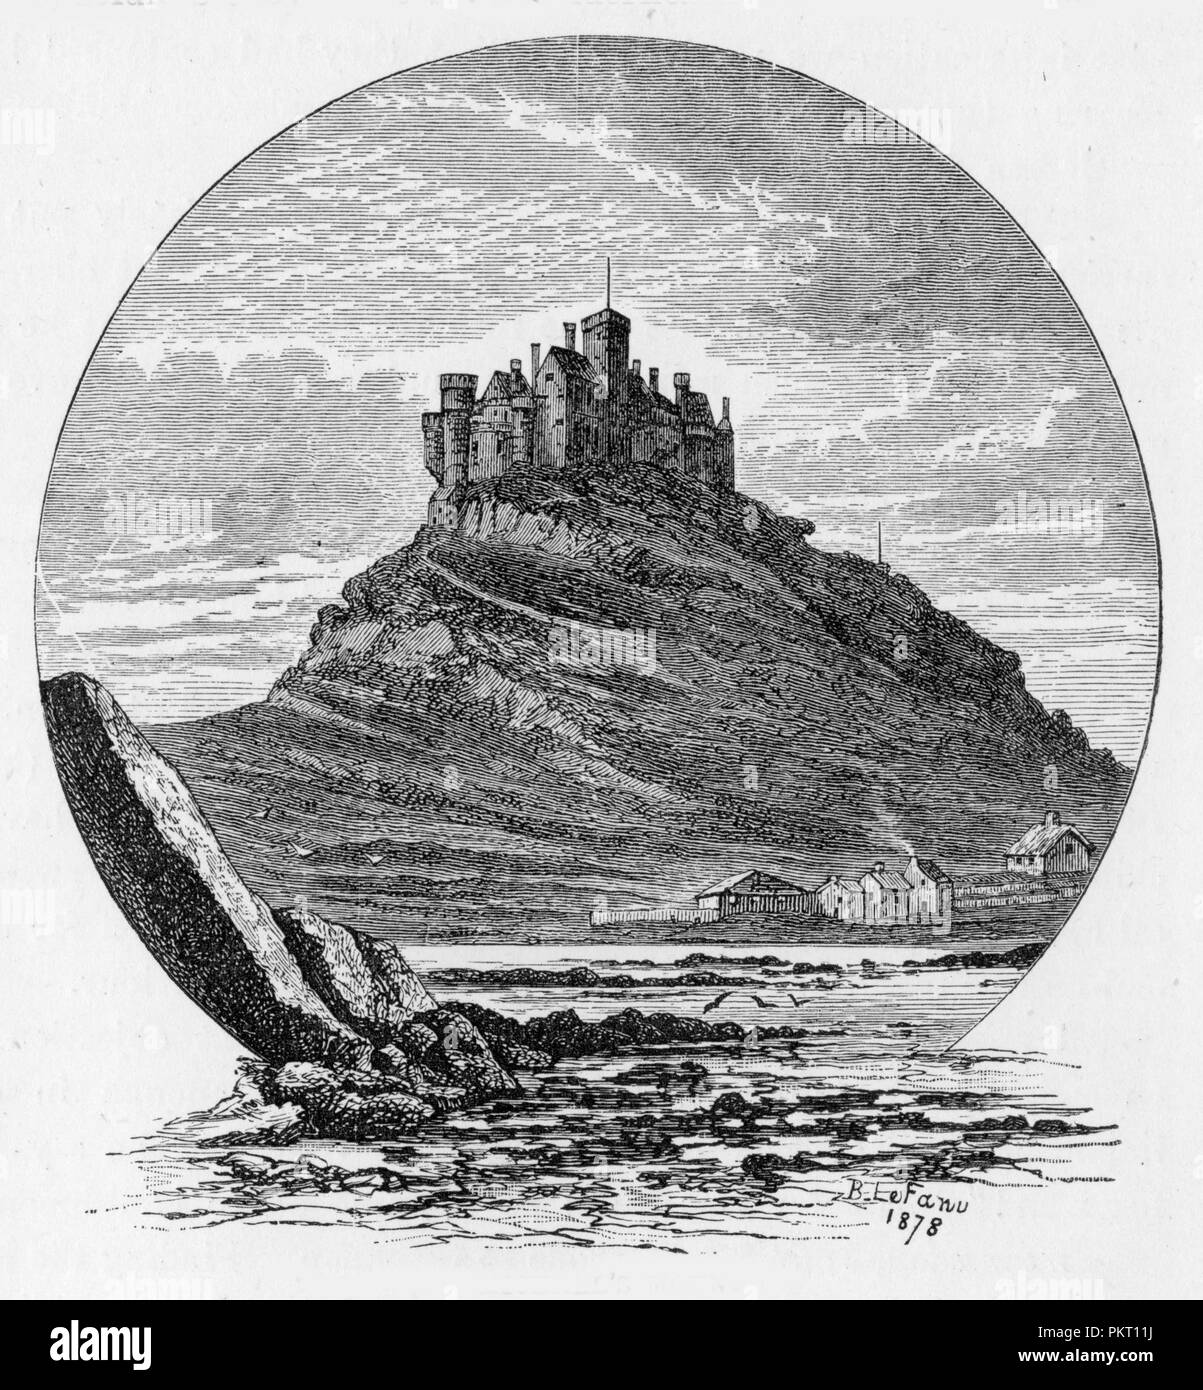 St Michael's Mount (kornisch: Karrek Loos yn Koos), eine Flutwelle Insel 366 Meter in den Berg Bay Küste von Cornwall, England, Vereinigtes Königreich; Gravur von Auswahlen aus dem Journal von John Wesley, 1891 Stockfoto